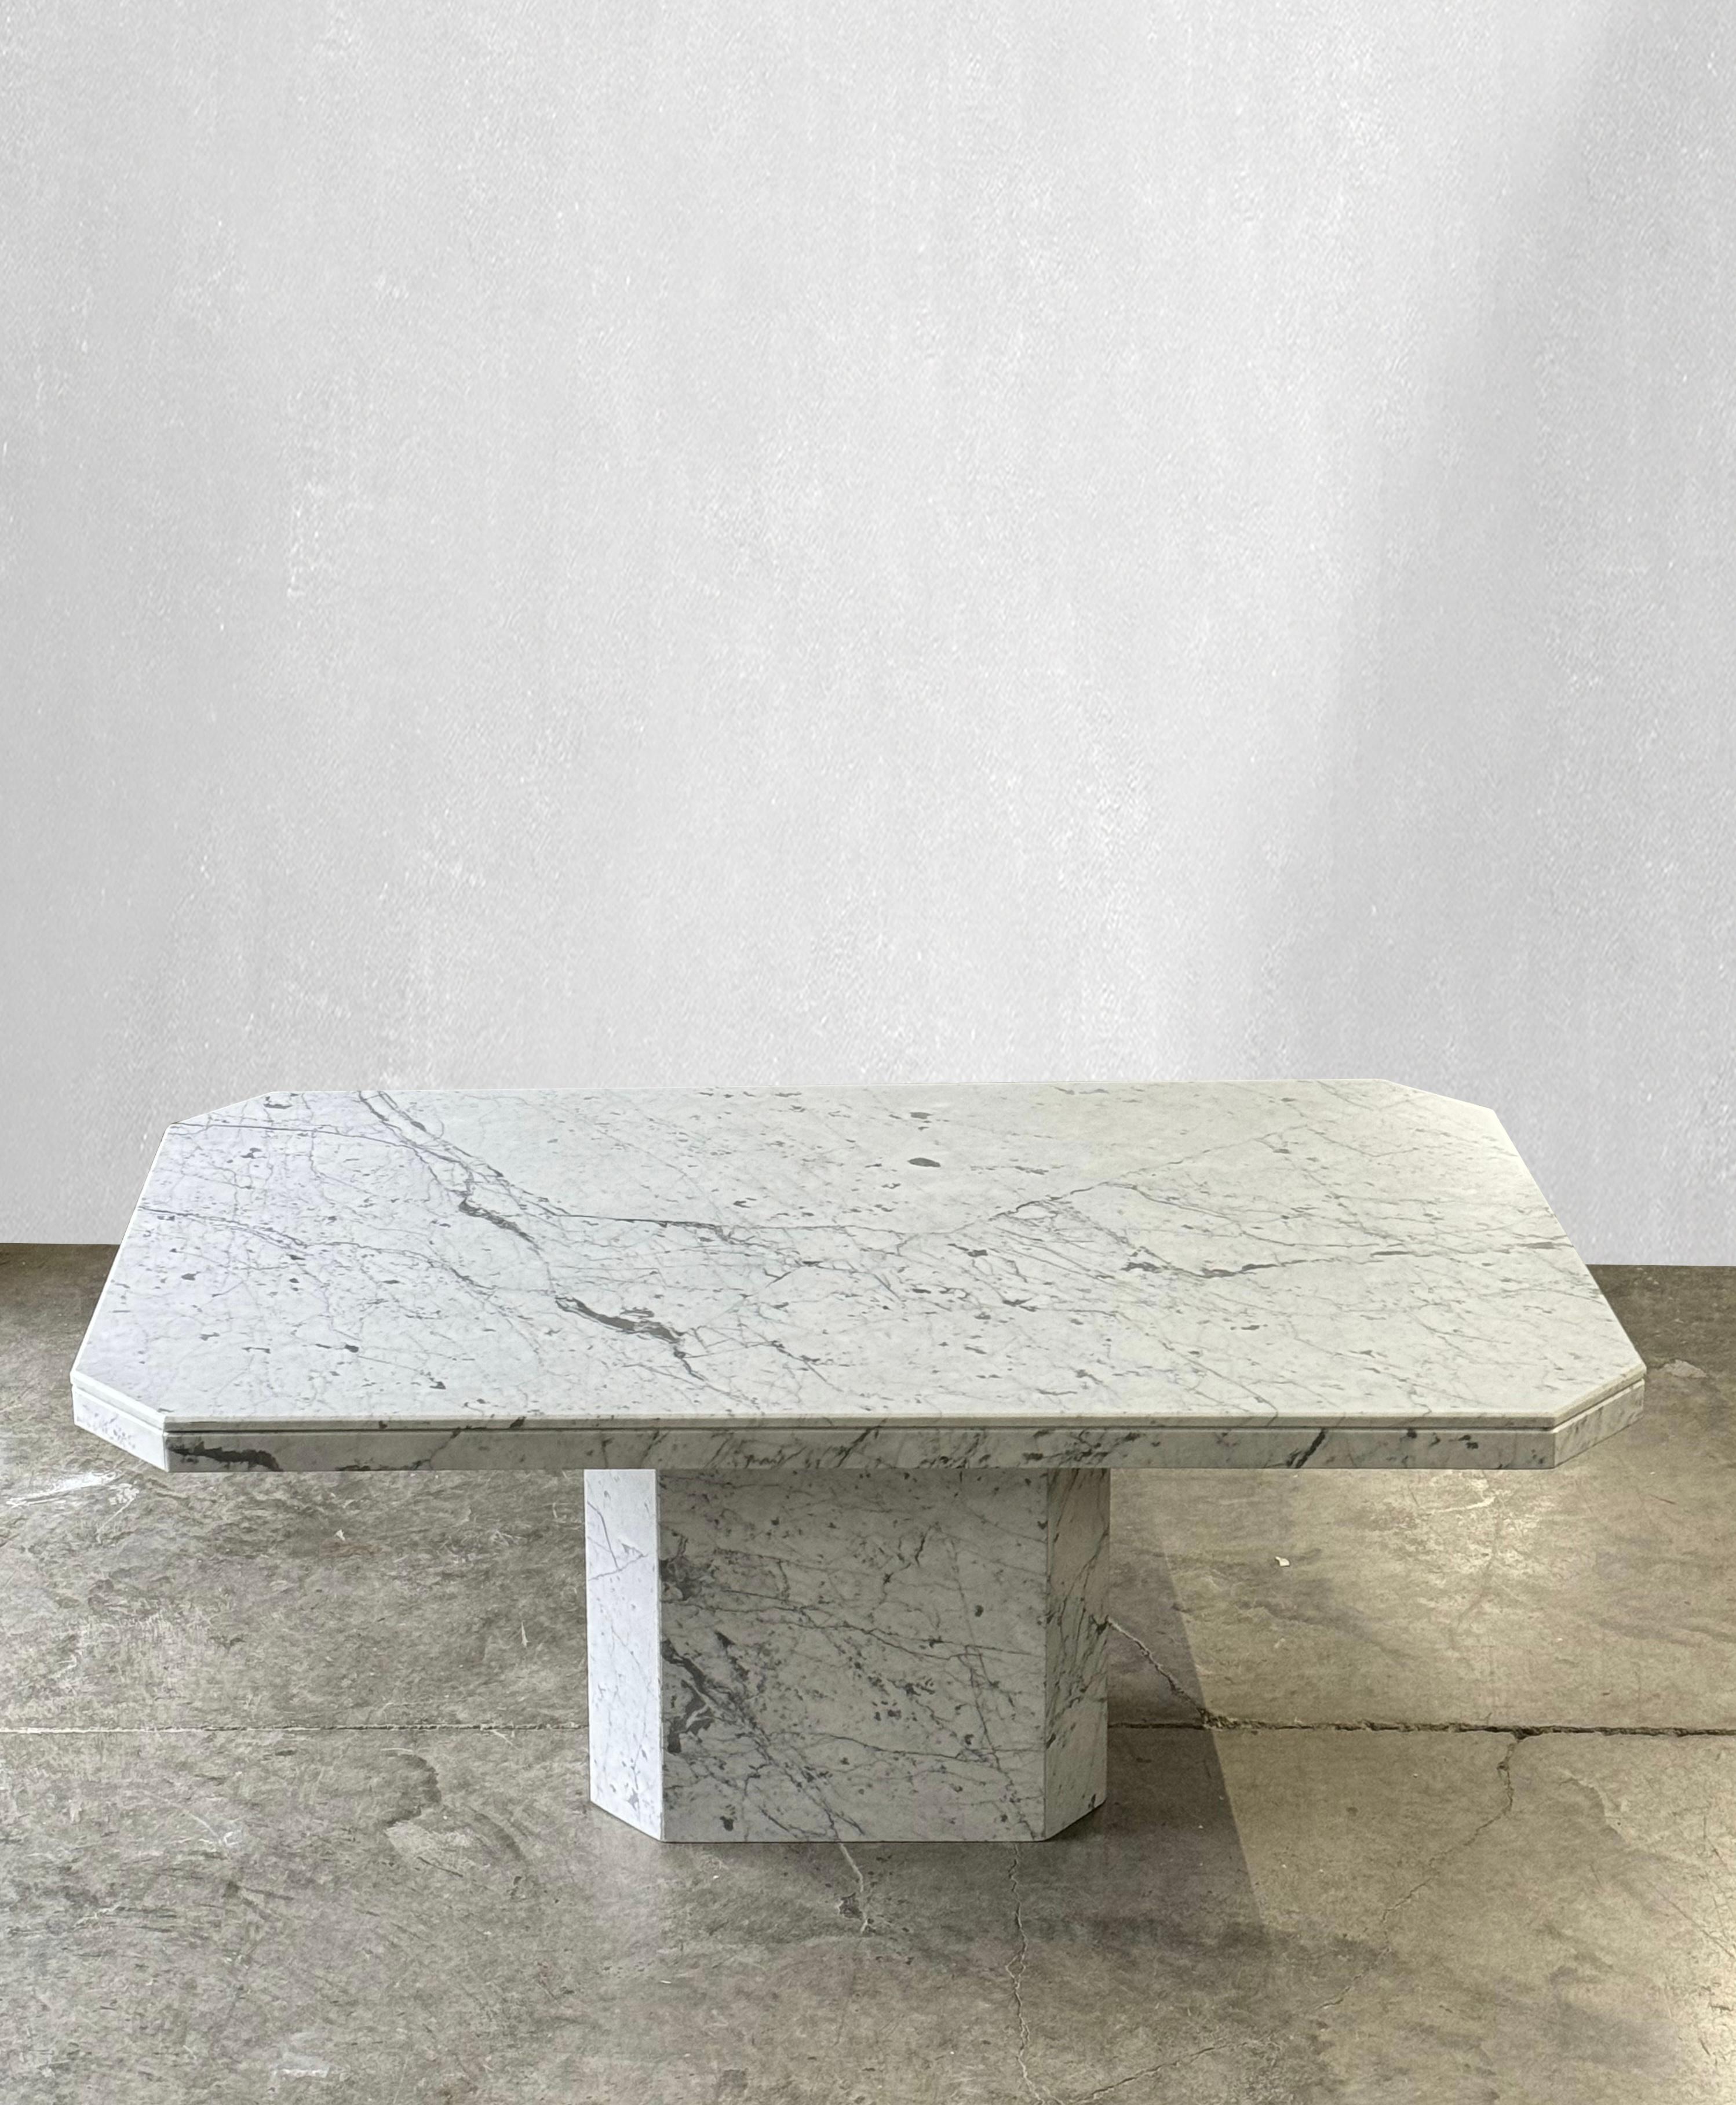 C. 1970

Monumentaler Esstisch aus Carrara-Marmor mit passendem Sockel.

Die massive Carrara-Marmorplatte und der Sockel weisen eine wunderschöne Maserung auf. Diese Tabelle hat  einzigartige abgewinkelte Ecken. Der dazu passende Sockel hat